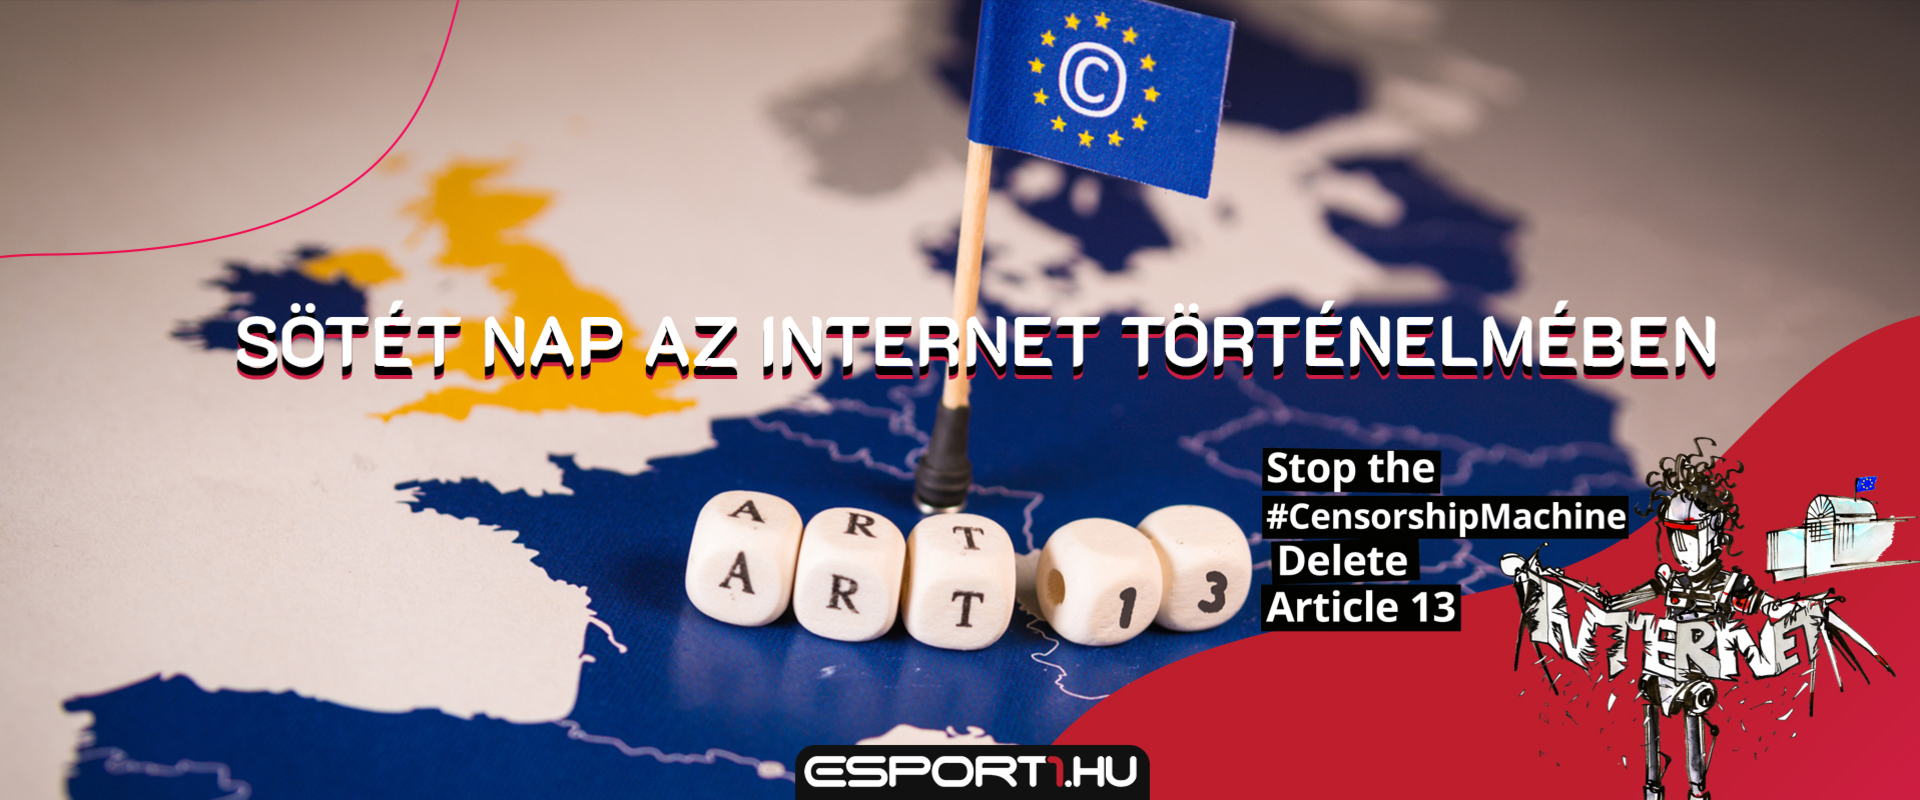 Hatalmasat csorbult az internetszabadság: az Európai Parlament elfogadta az Article 13-at!